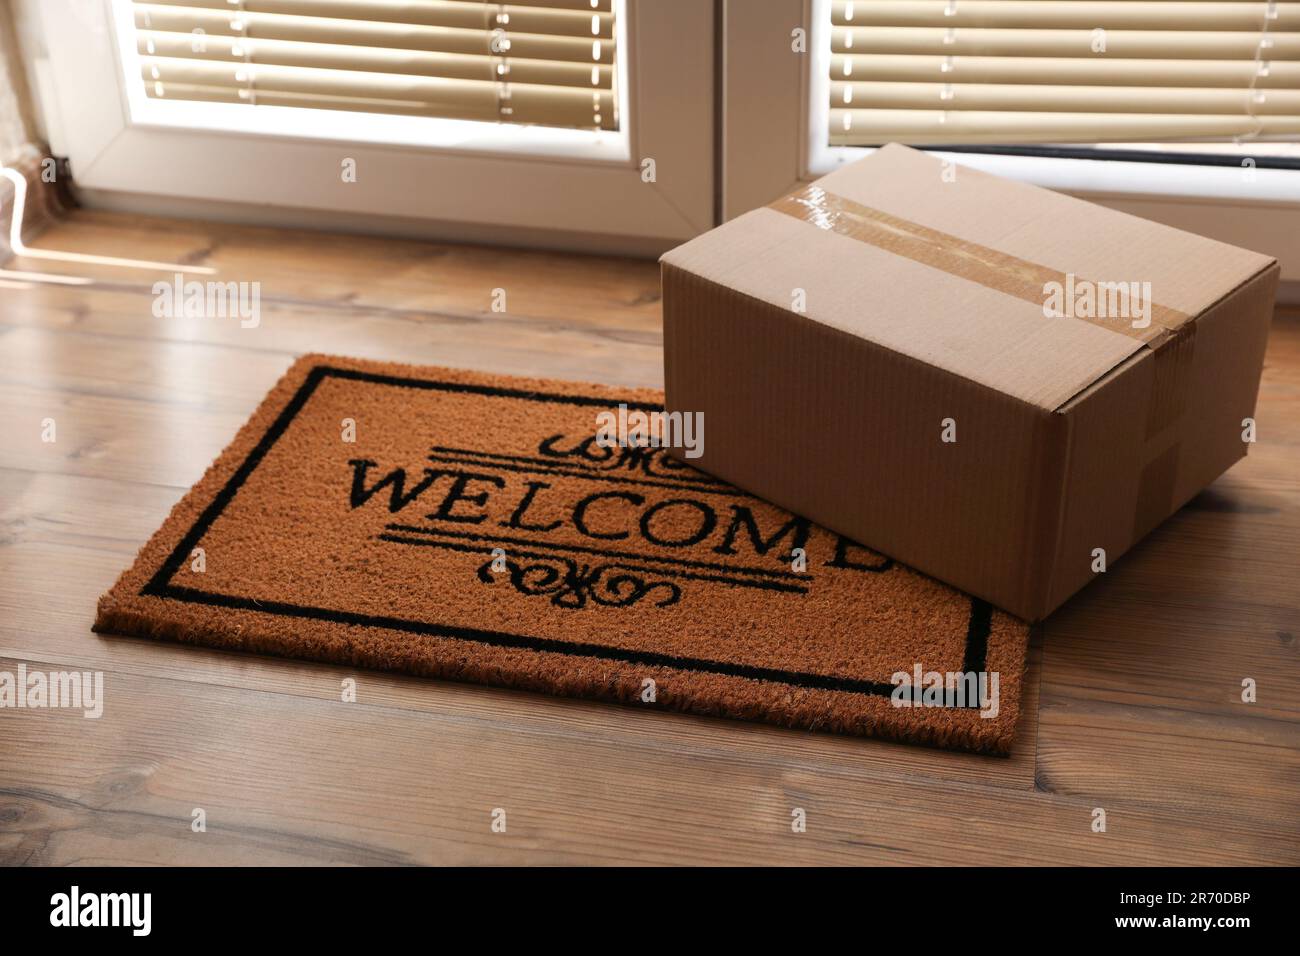 Parcel on mat near front door indoors Stock Photo